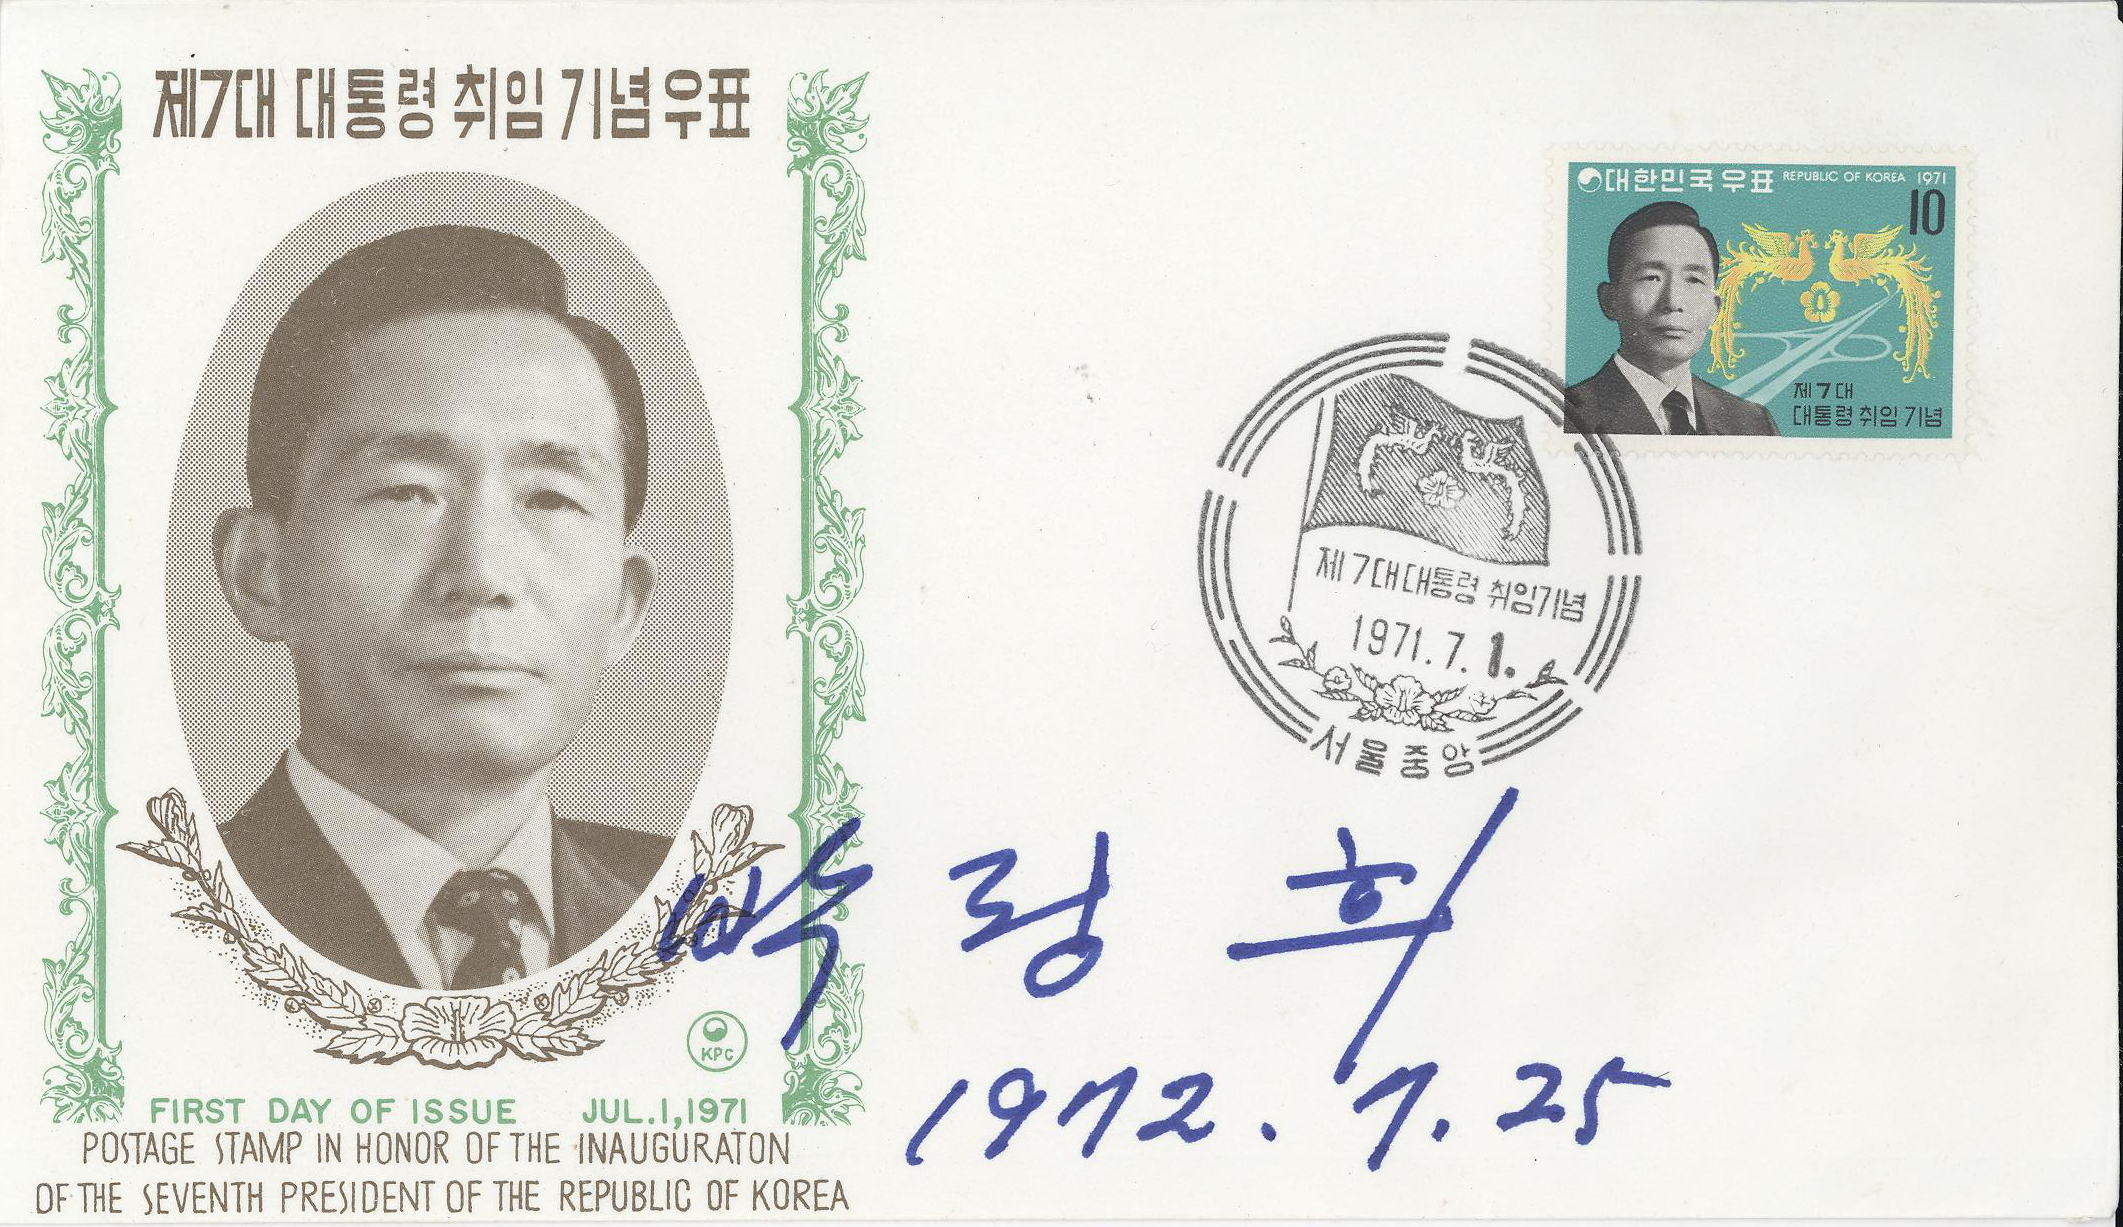 Carte commémorative de l'investiture de Park Chung-hee à la présidence de la République de Corée en 1971 après sa troisième élection. (Source : Artsandculture)